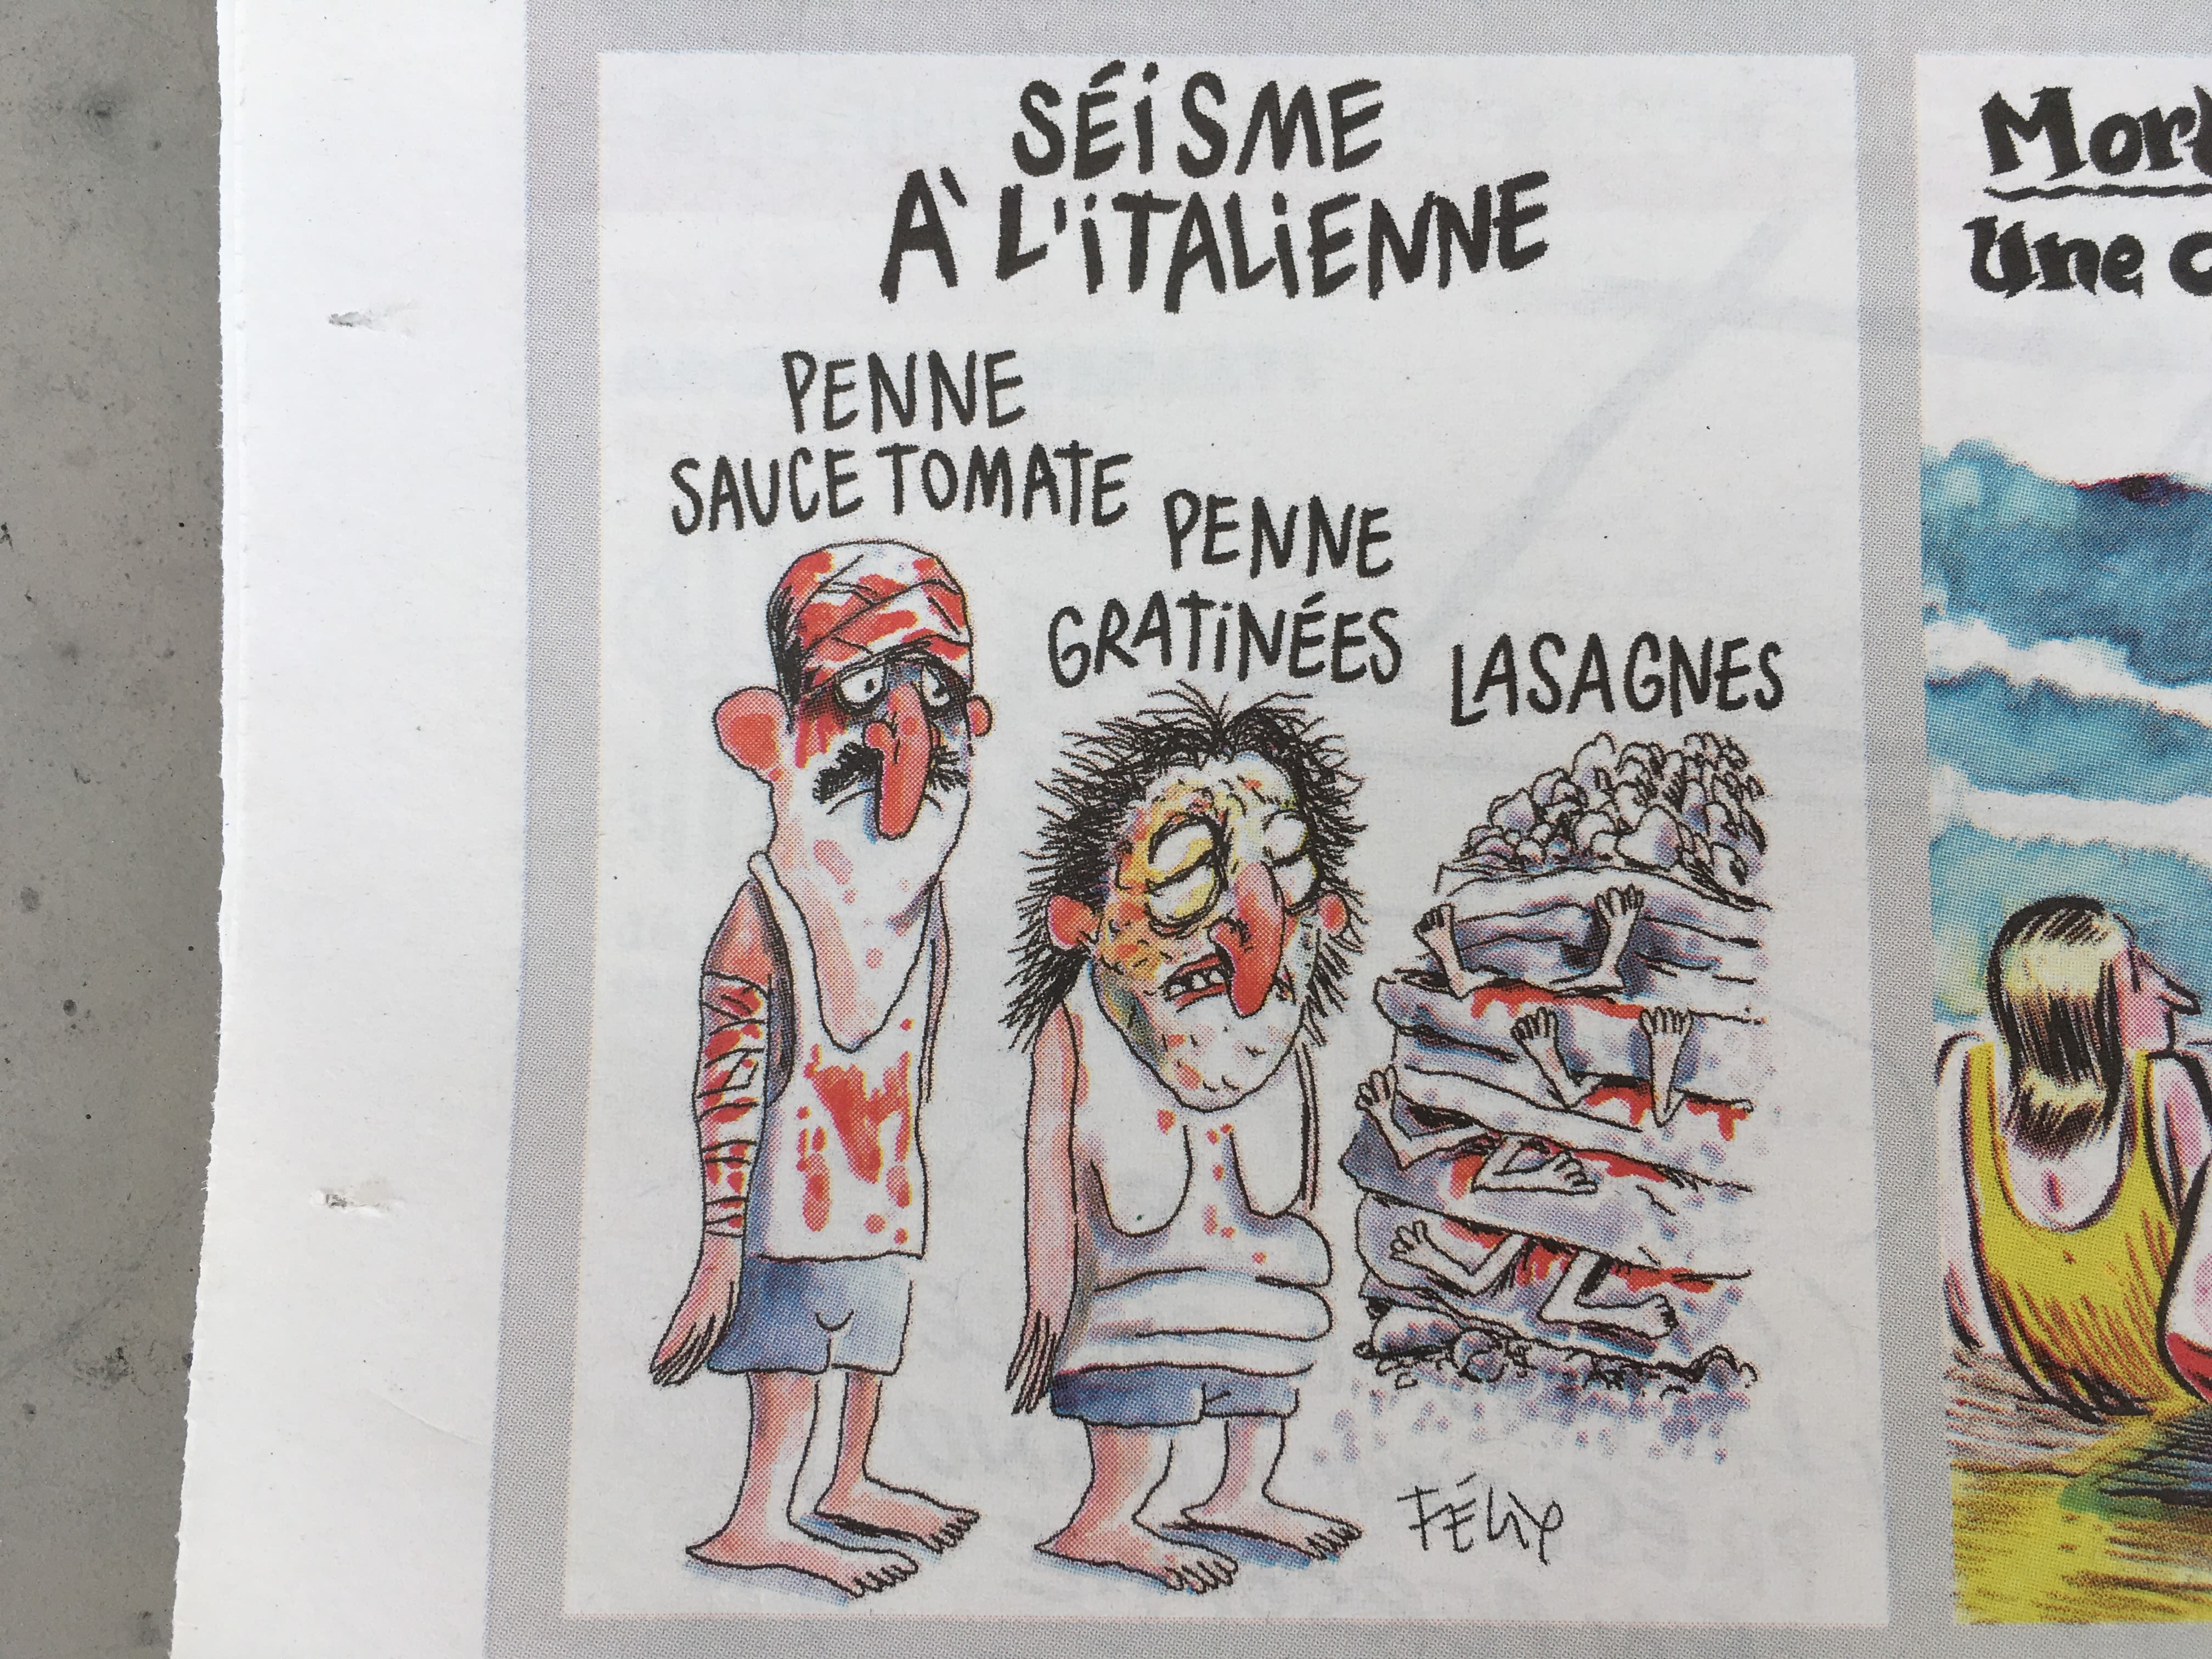 Charlie Hebdo slammed for Italy earthquake cartoon | CNN